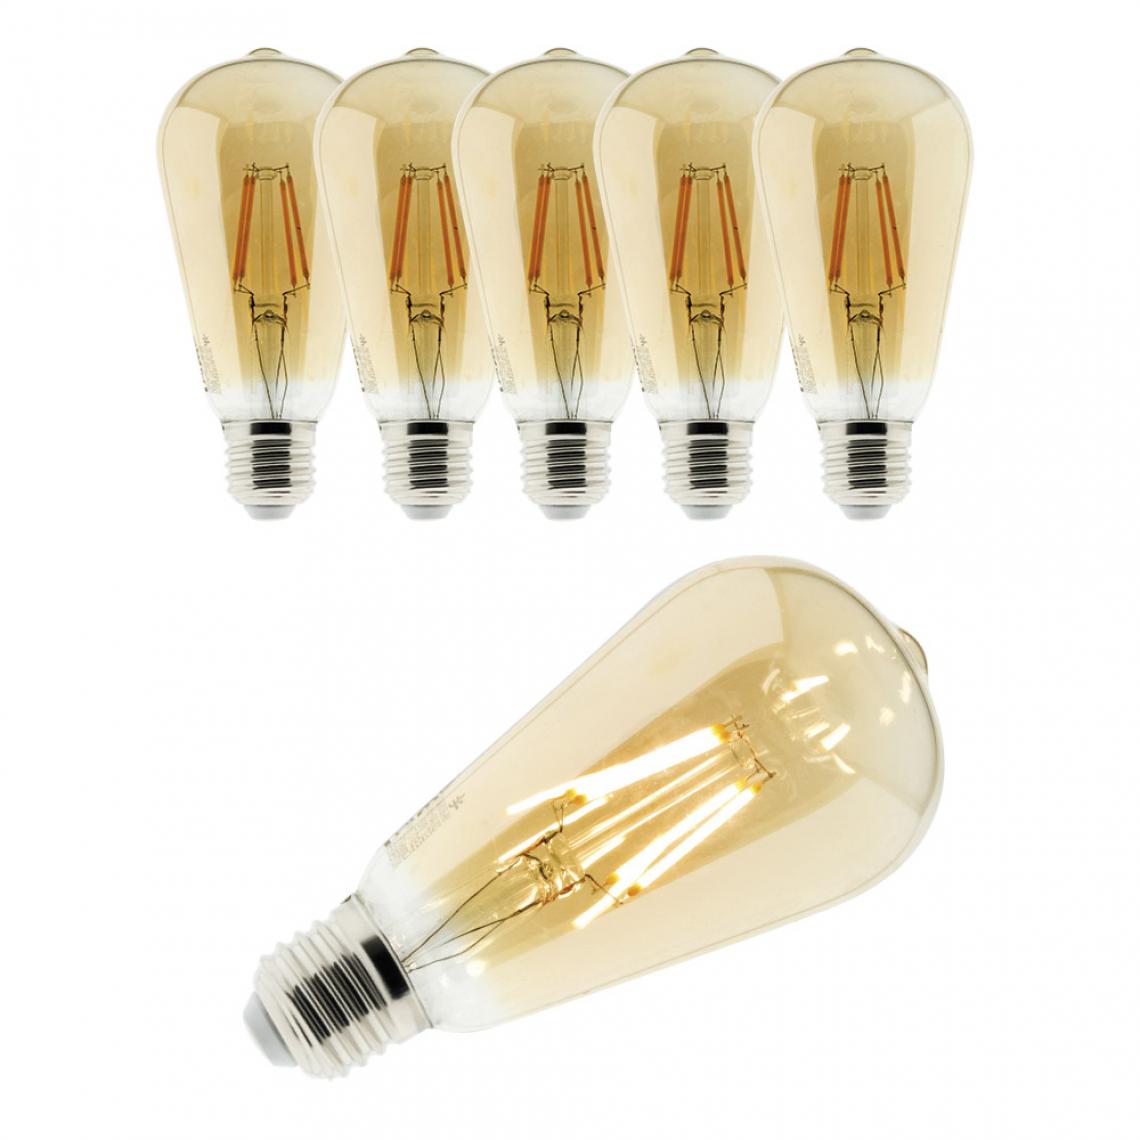 Elexity - Lot de 6 ampoules Déco filament LED ambrée 4W E27 400lm 2500K - Edison - Ampoules LED